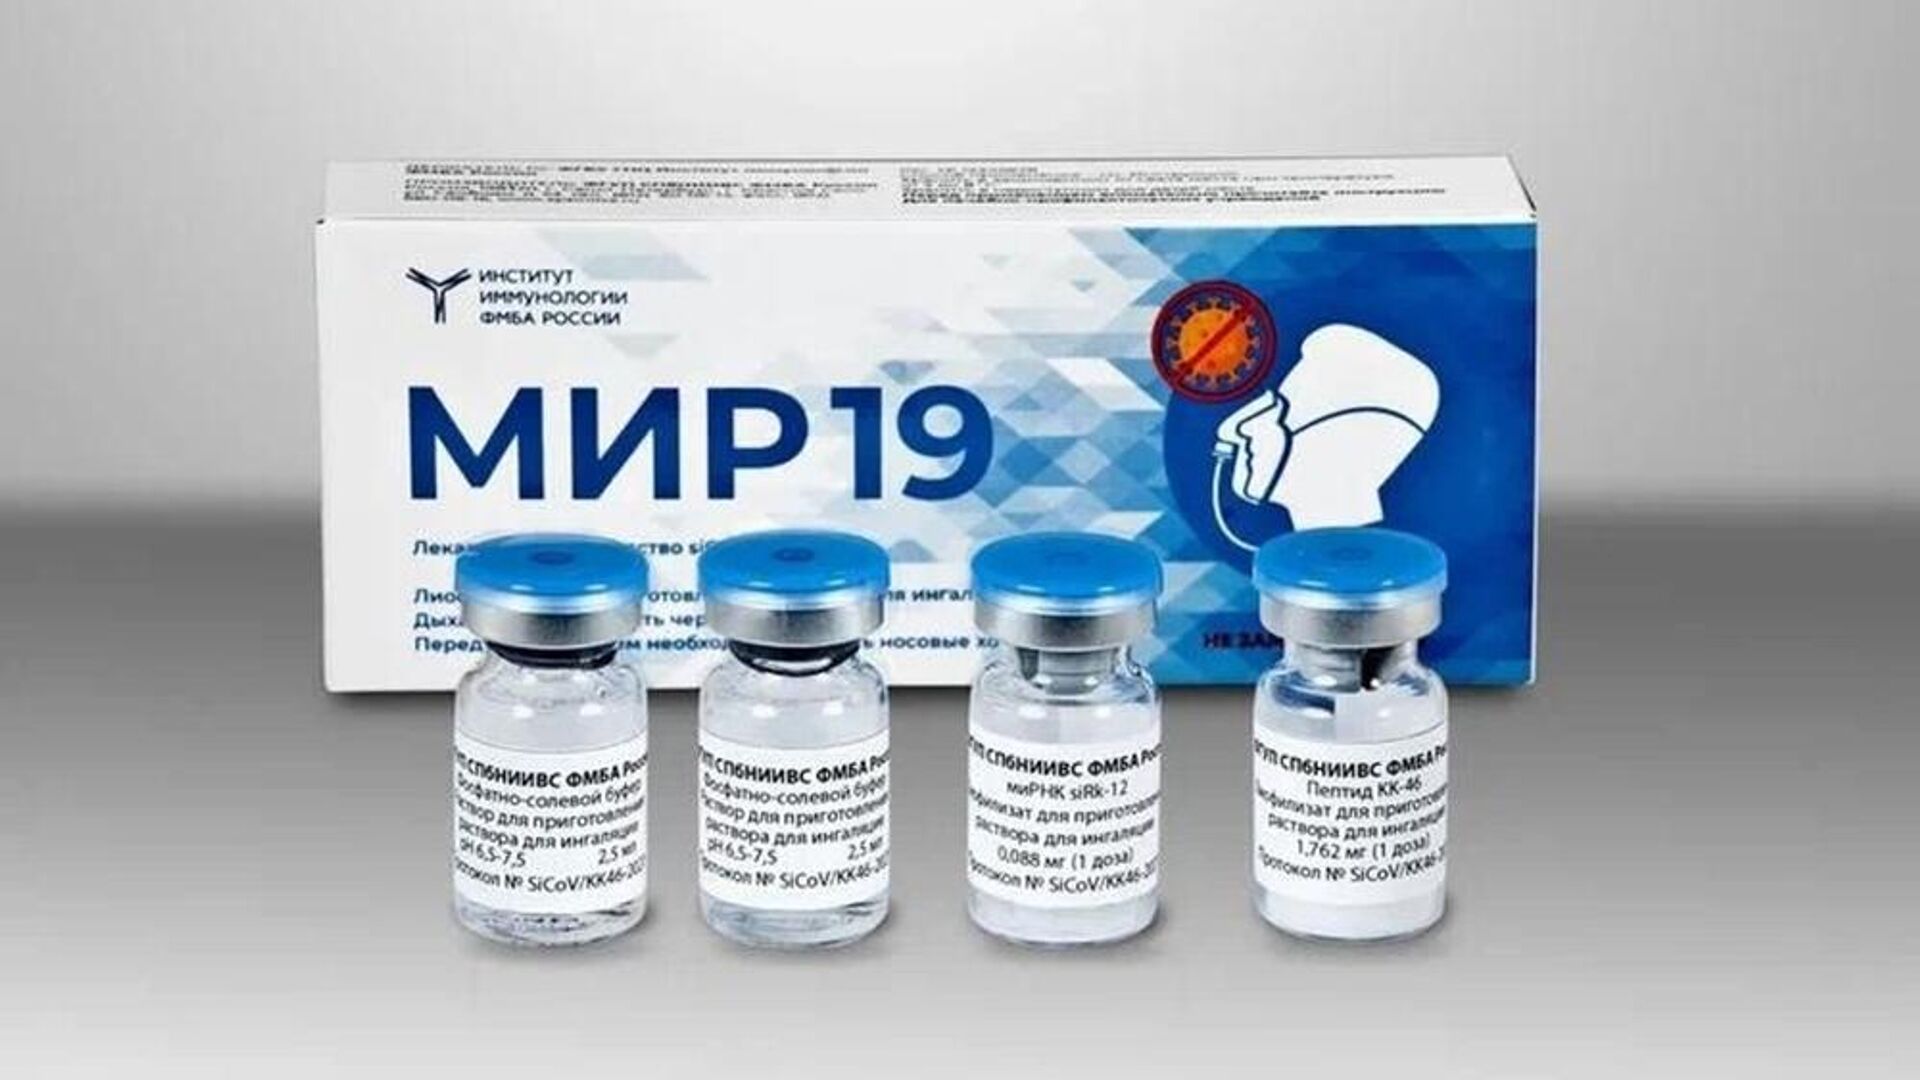 Препарат для лечения COVID-19 МИР 19 зарегистрирован в России - Sputnik Таджикистан, 1920, 23.12.2021